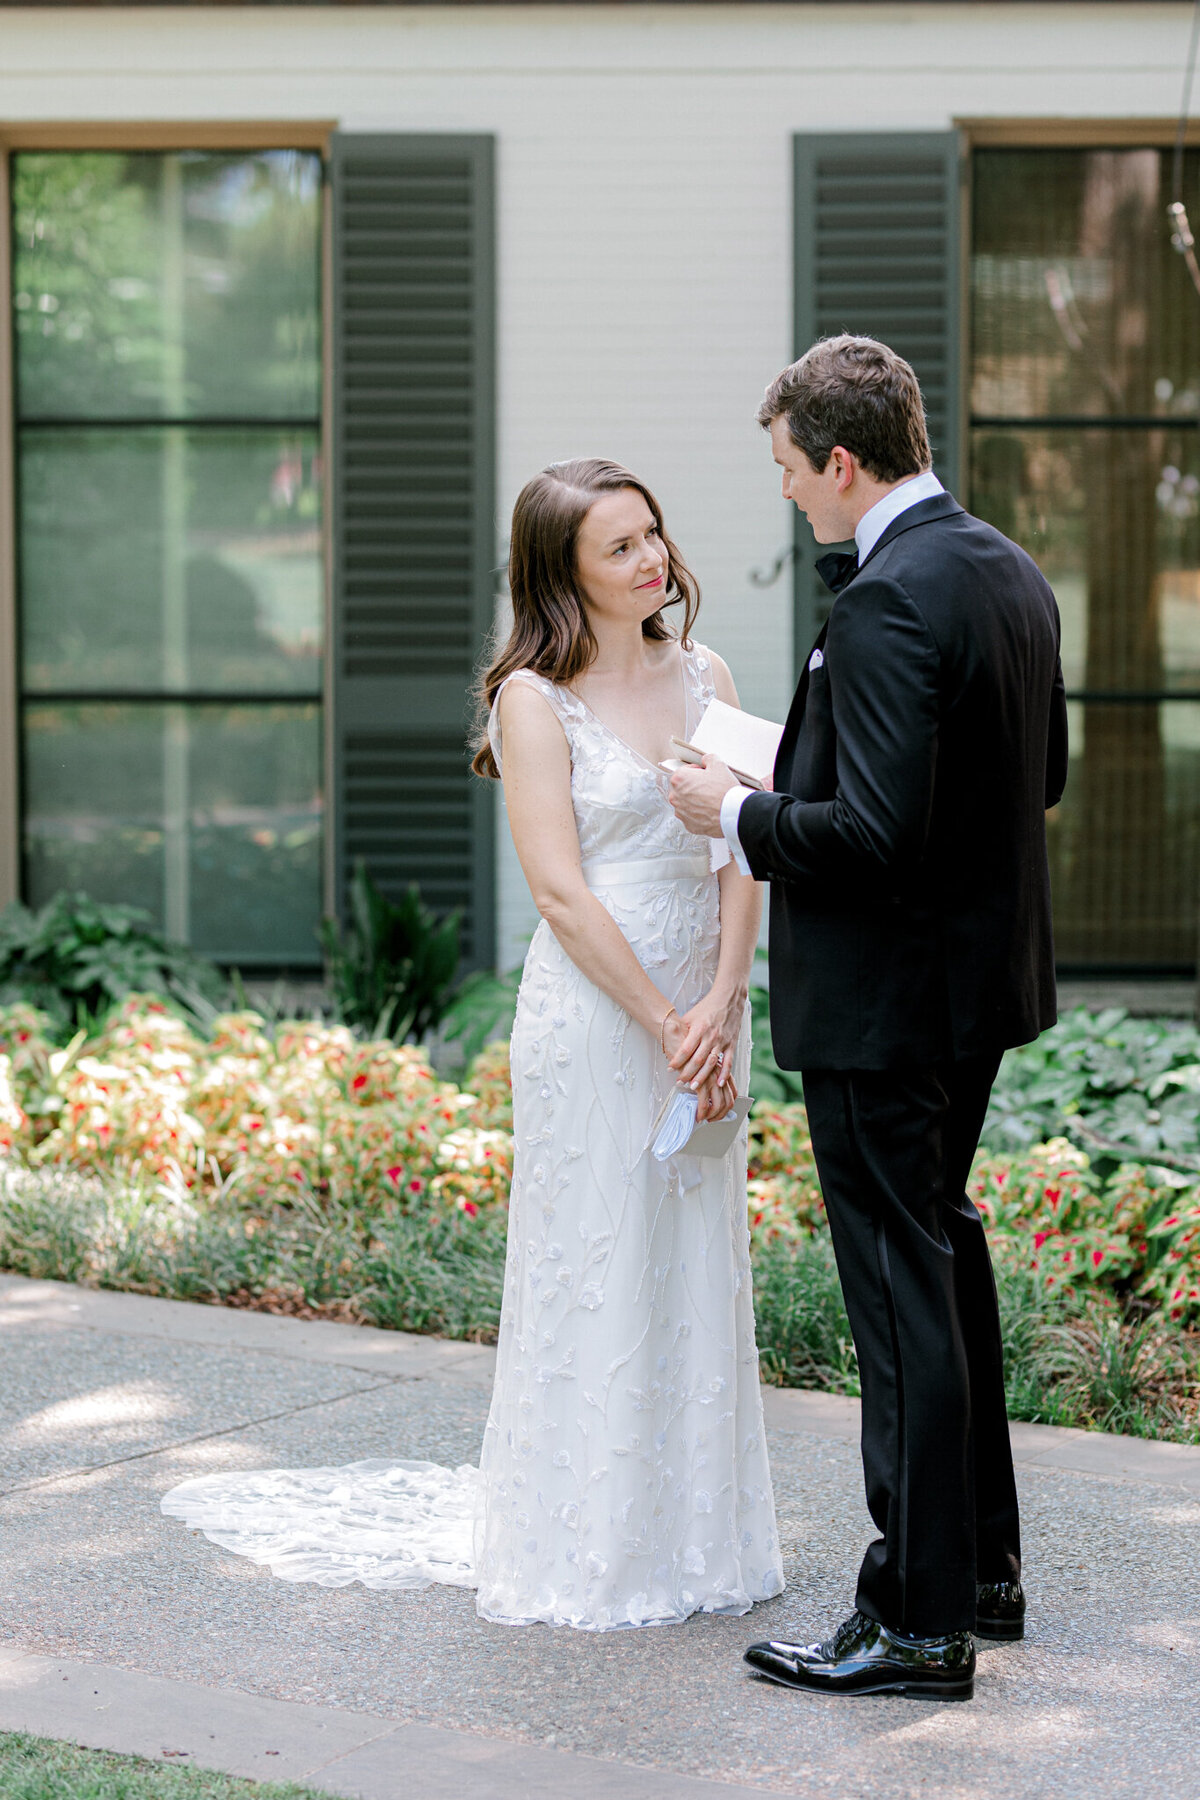 Gena & Matt's Wedding at the Dallas Arboretum | Dallas Wedding Photographer | Sami Kathryn Photography-84